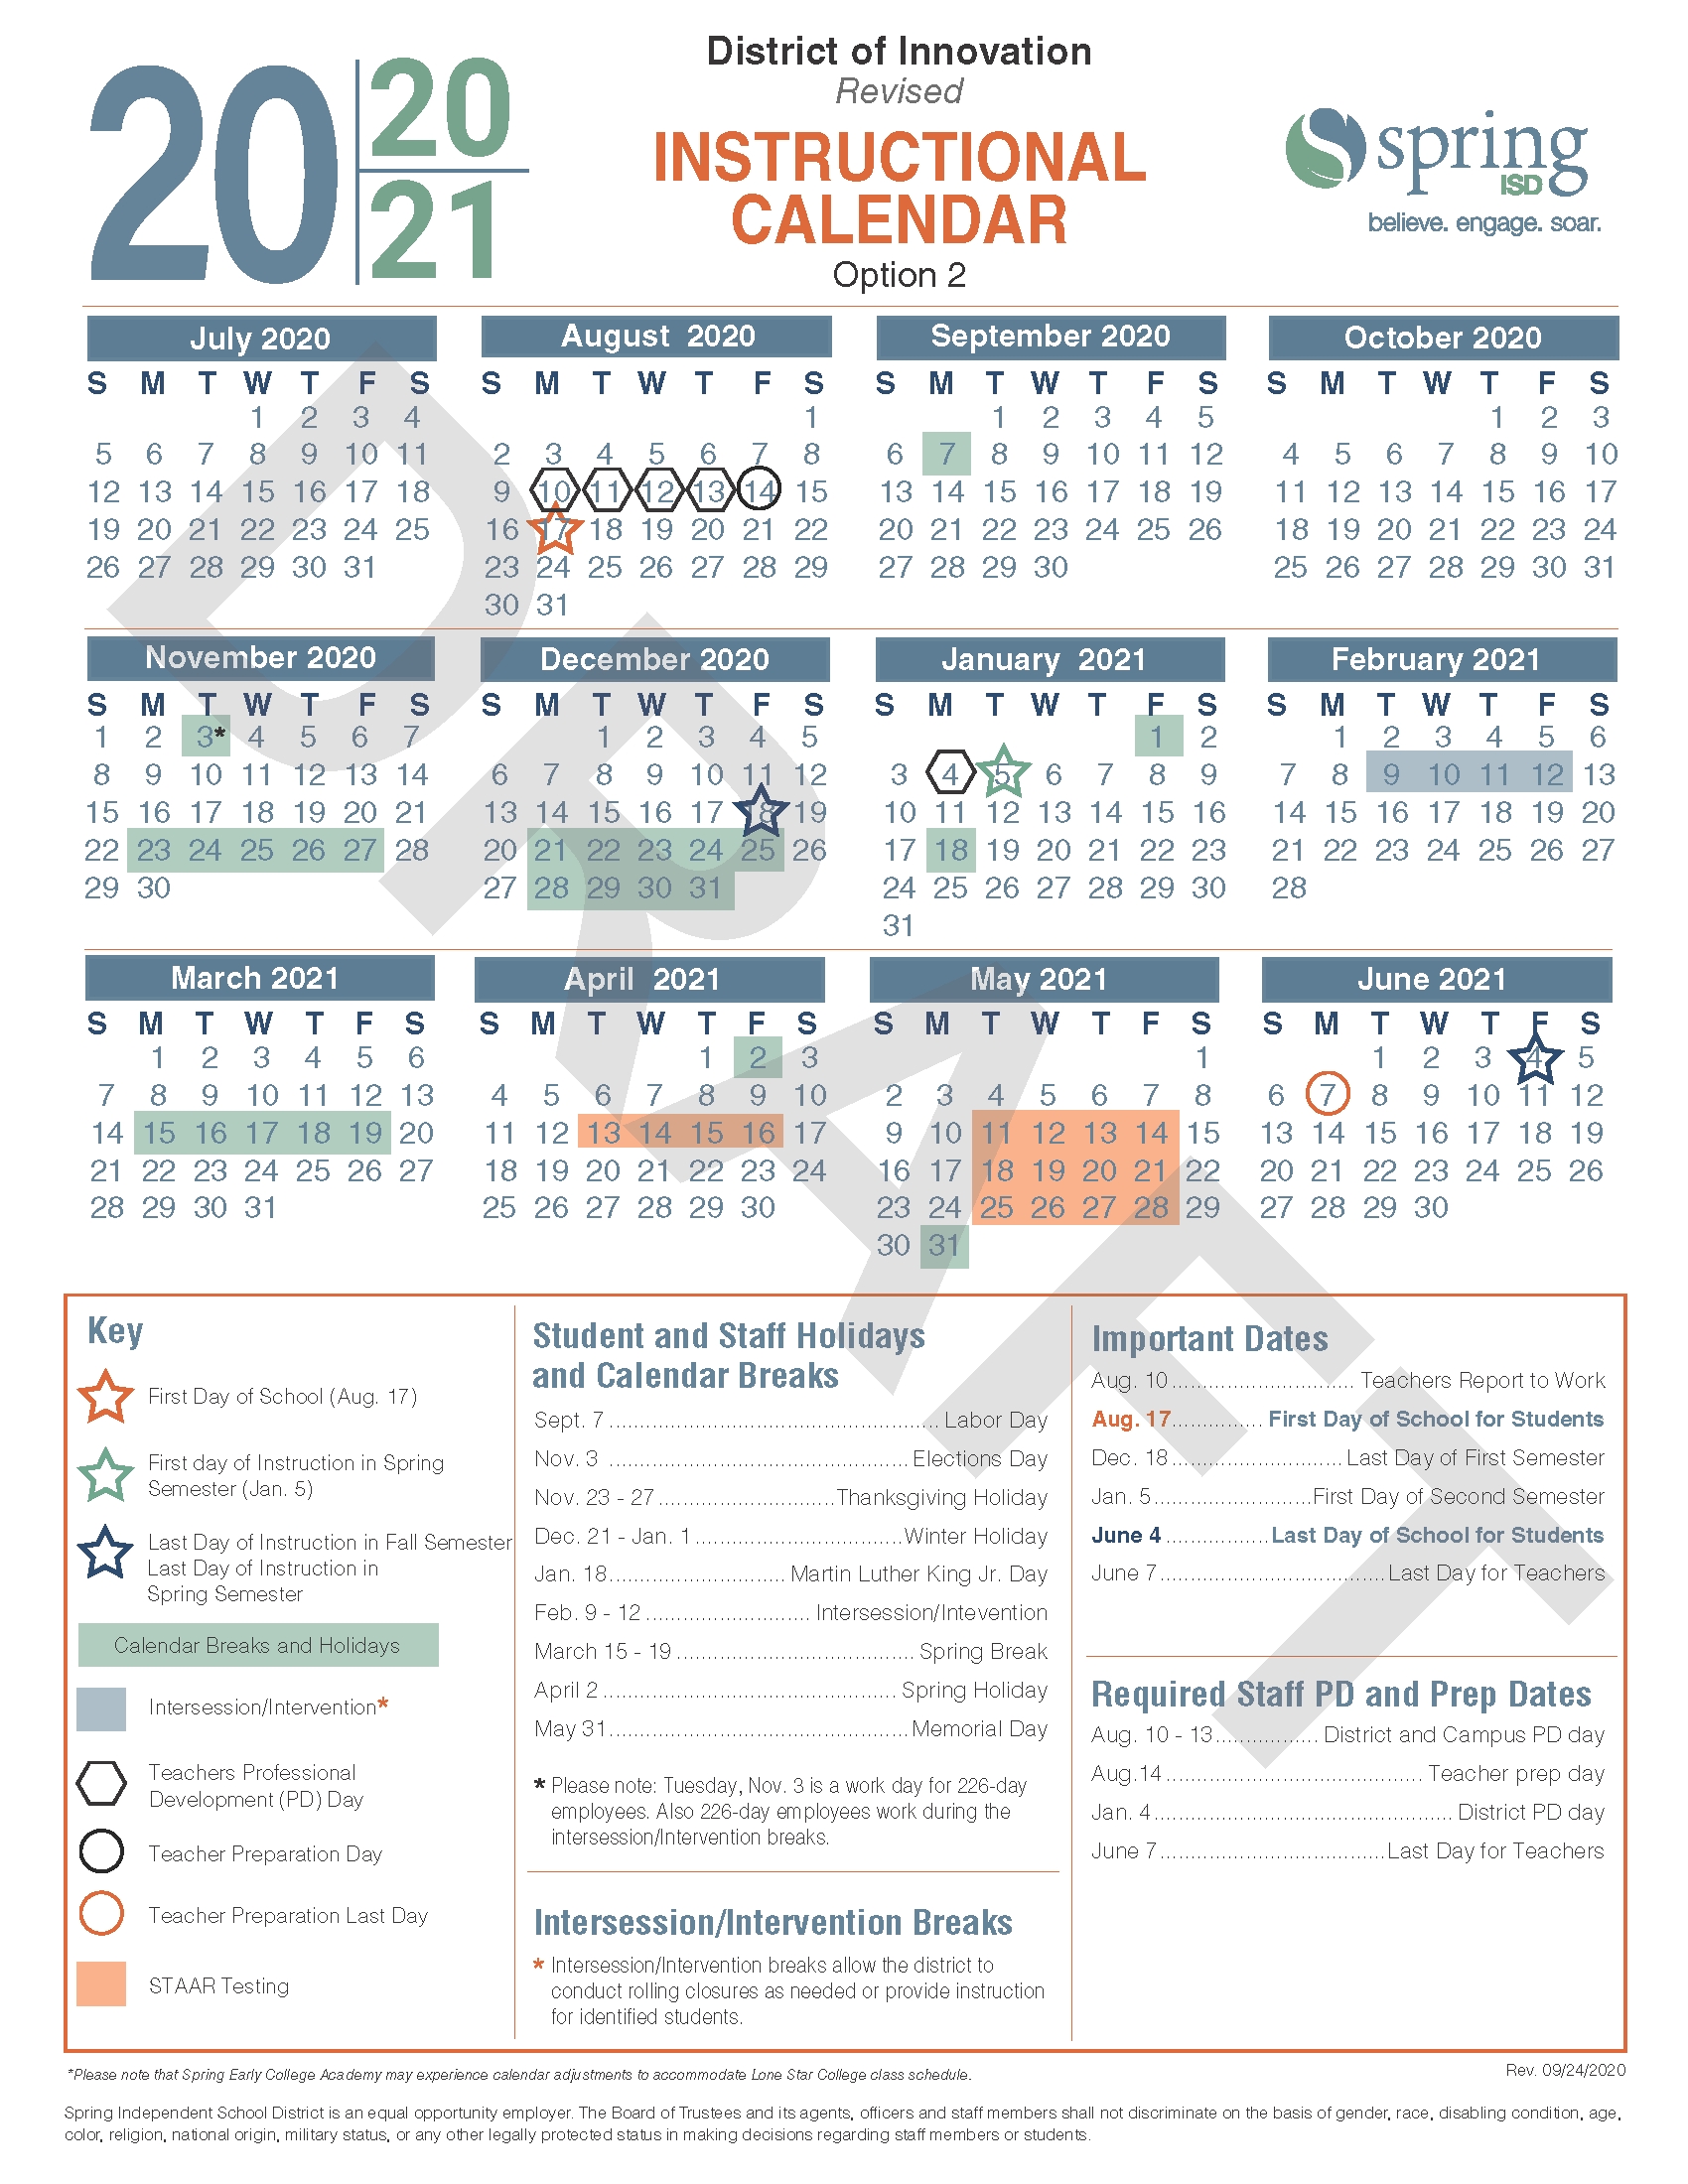 Calendar Survey / Revised 2020-21 Instructional Calendar